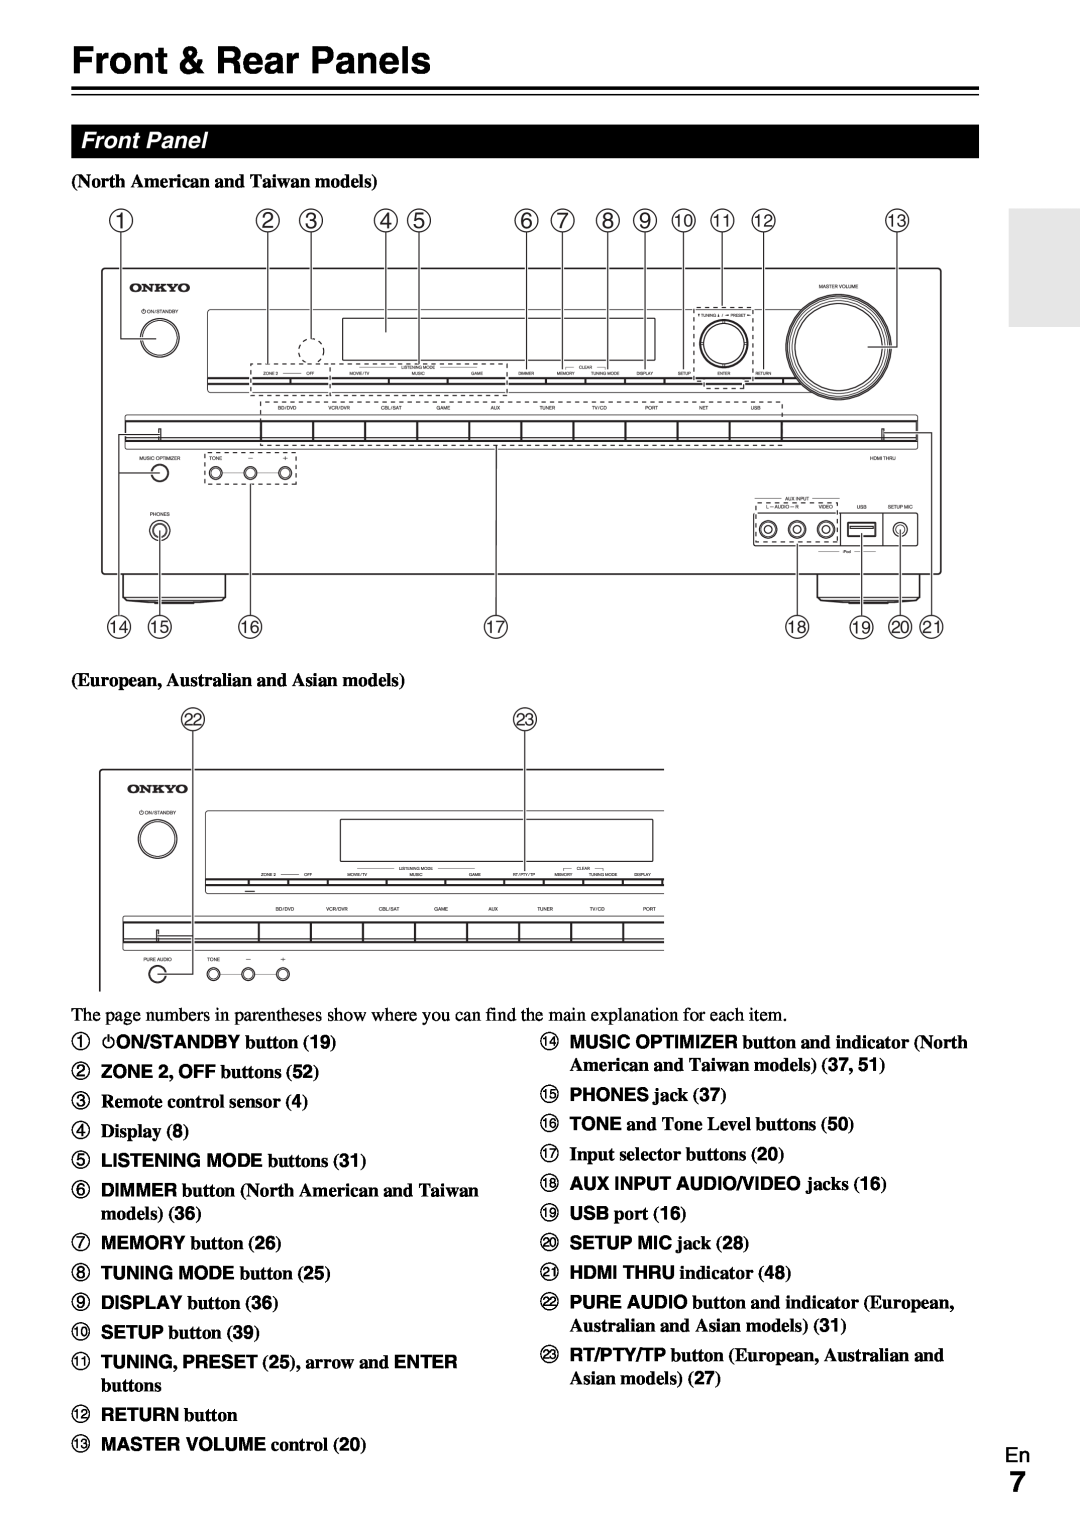 Onkyo TX-NR509 Front & Rear Panels, b c d e, f g h i j k l, n o p, r s t u, Front Panel, eLISTENING MODE buttons 